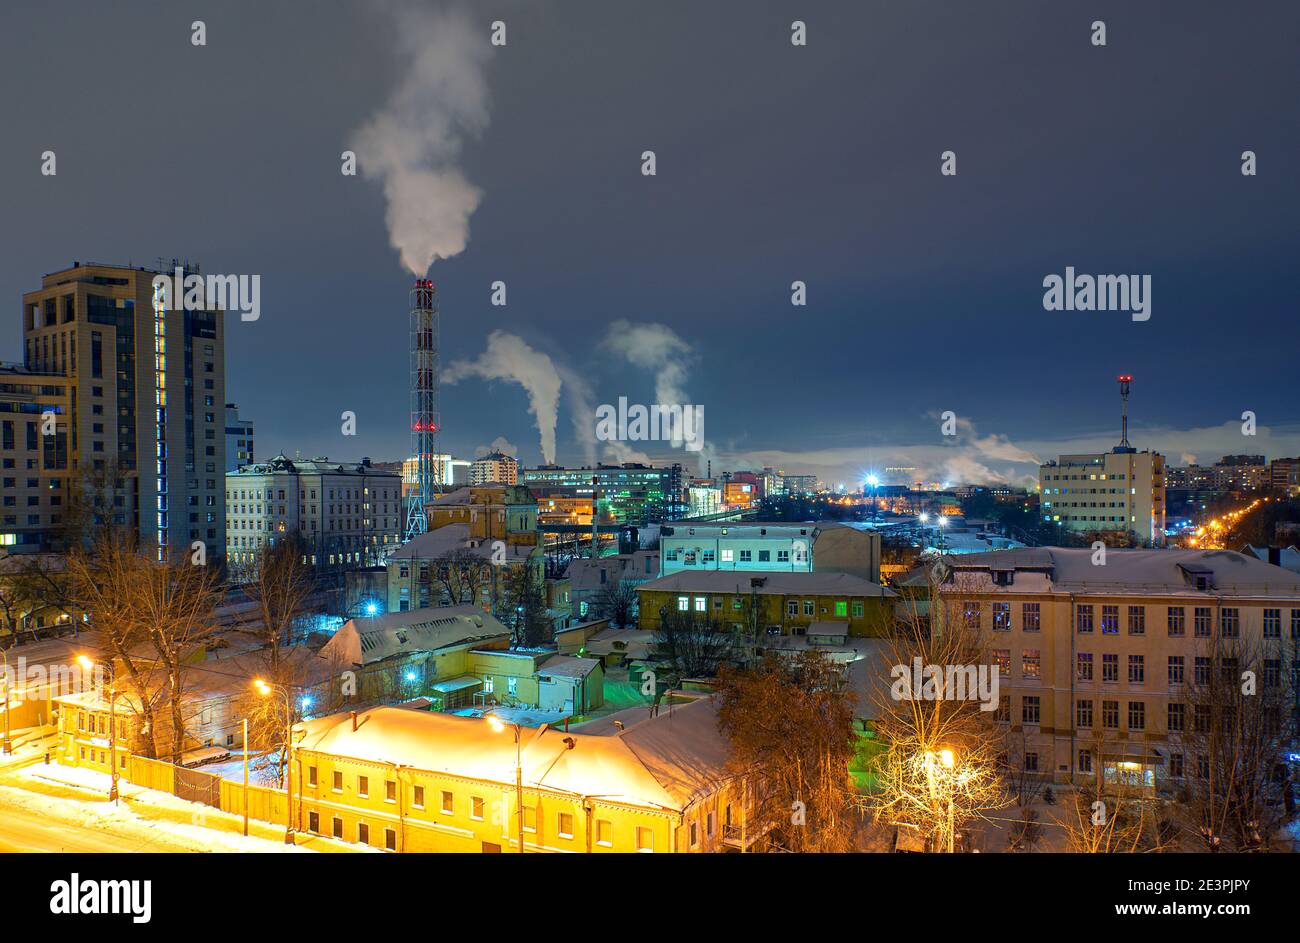 Paesaggio urbano del distretto di Mosca con architettura moderna tradizionale durante la notte invernale. Tubi del locale caldaia con inquinamento atmosferico Foto Stock